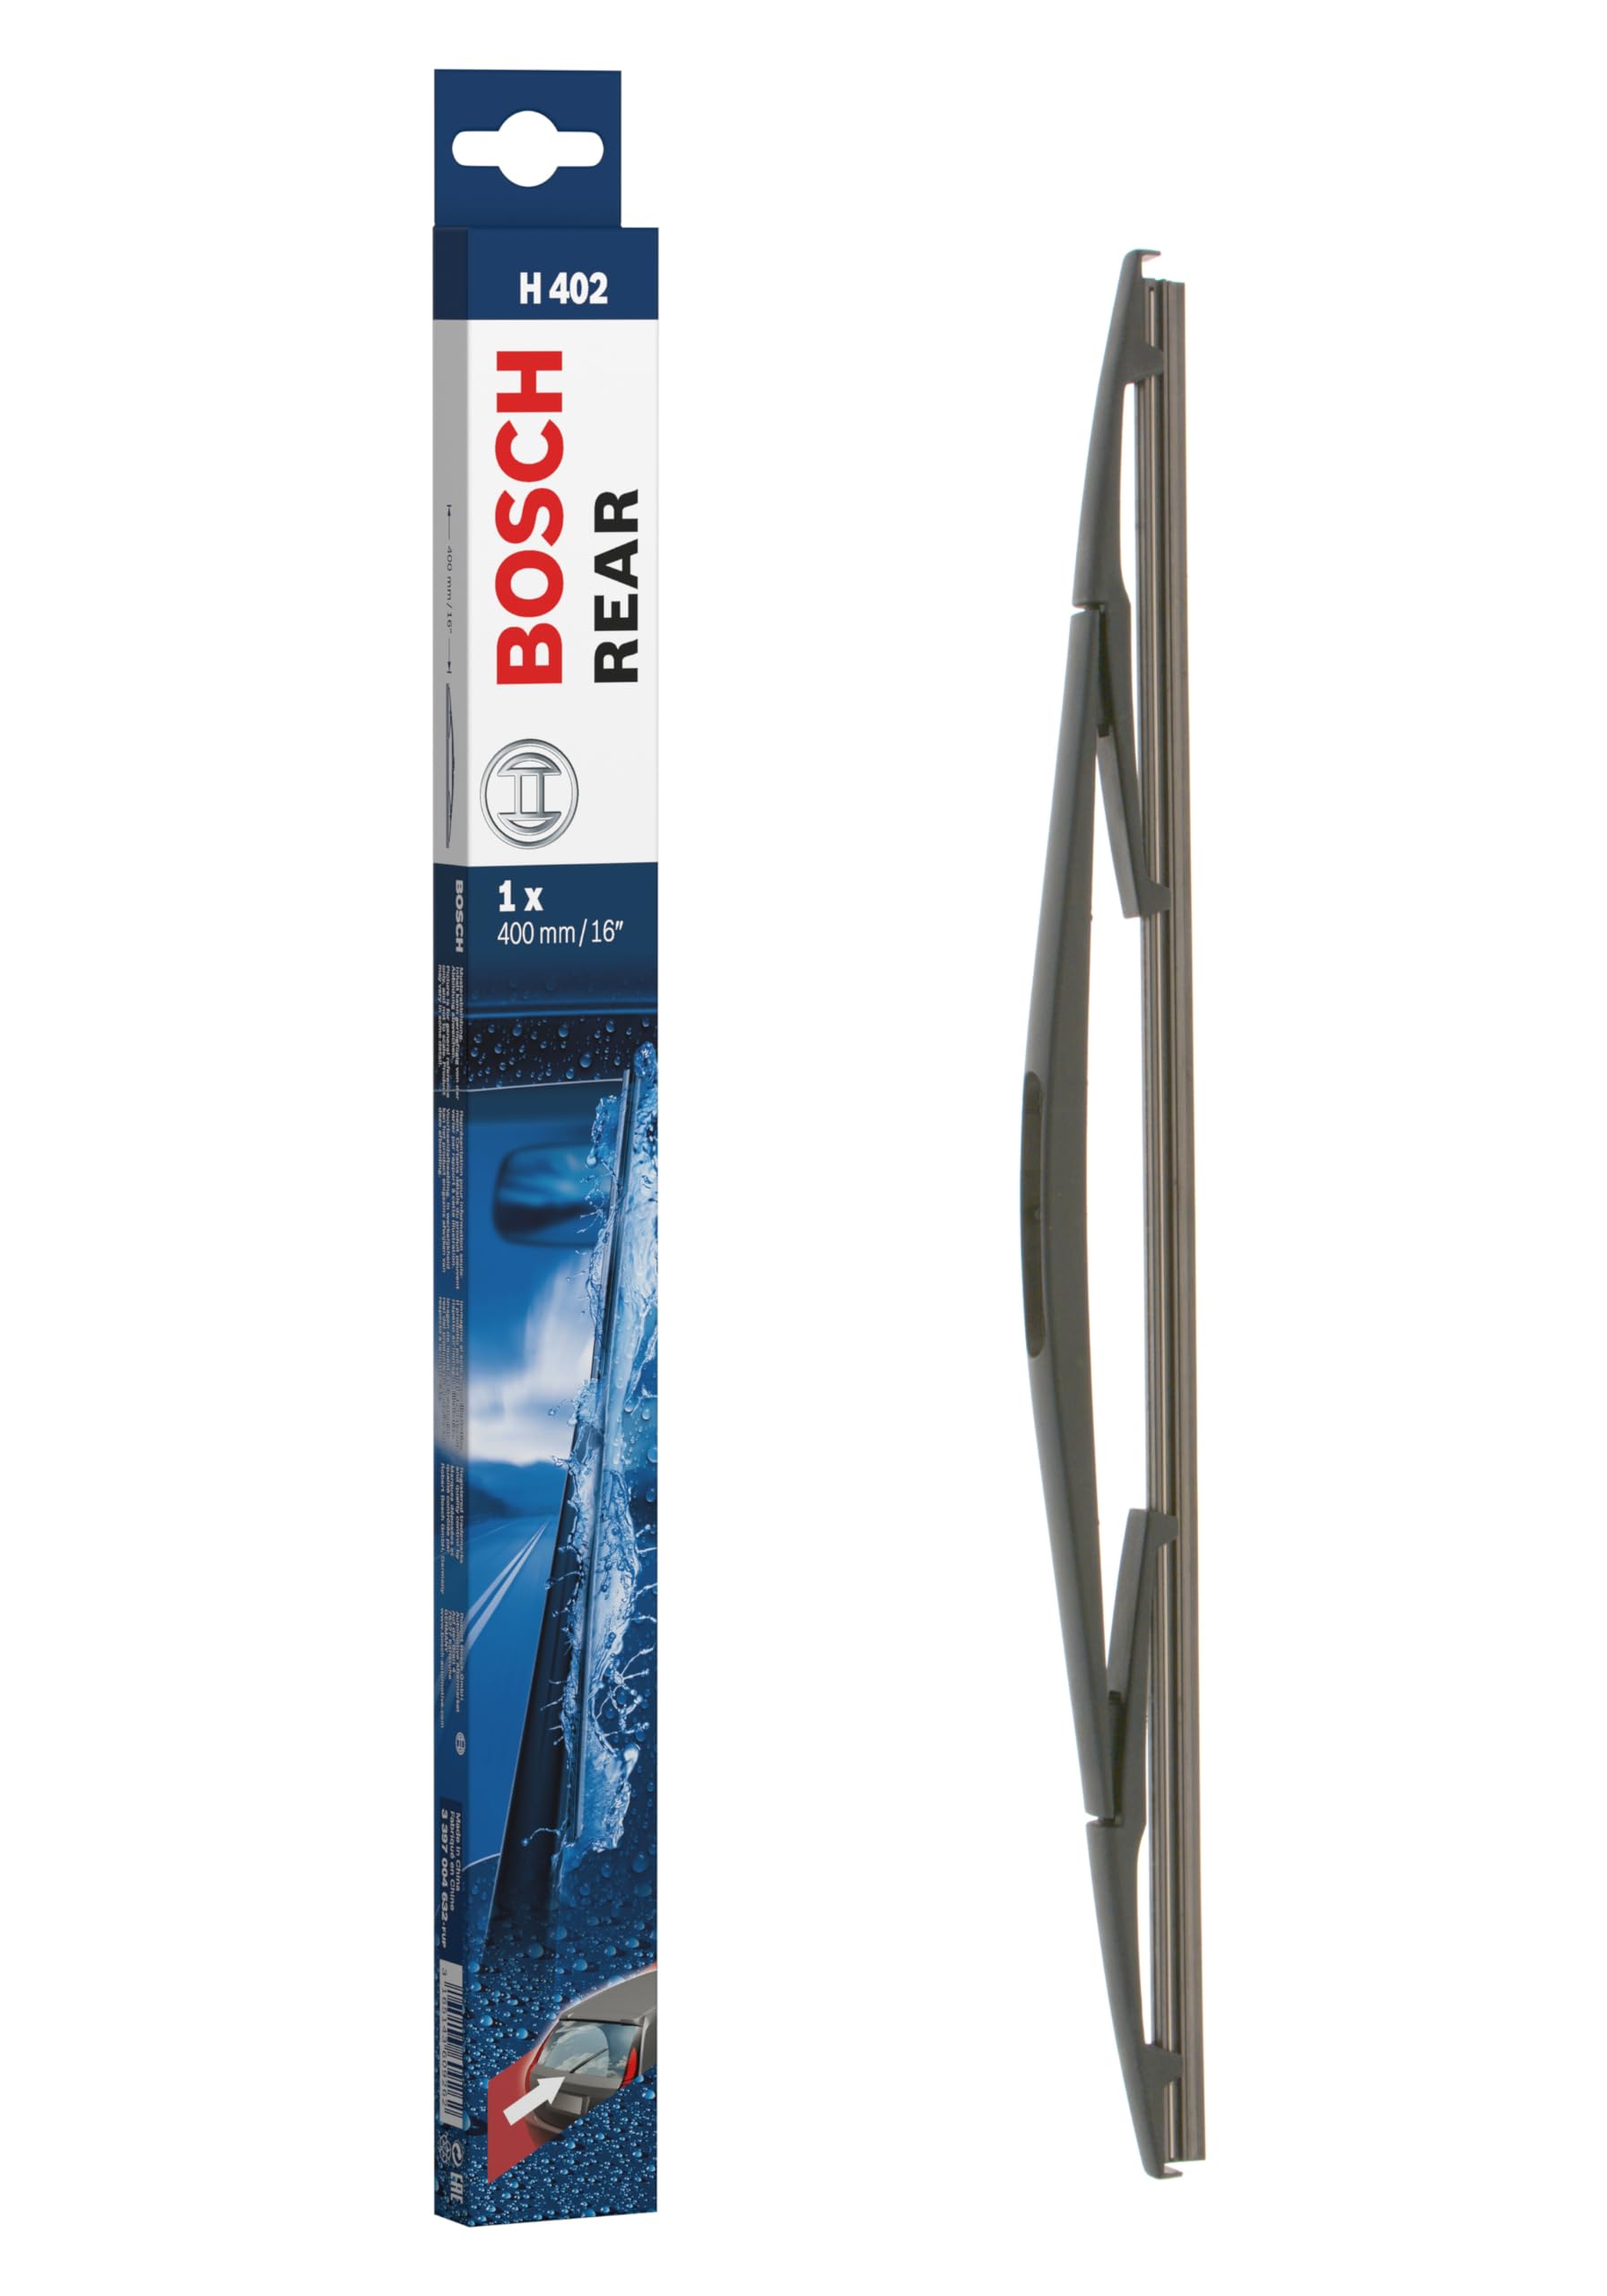 Bosch Scheibenwischer Rear H402, Länge: 400mm – Scheibenwischer für Heckscheibe von Bosch Automotive